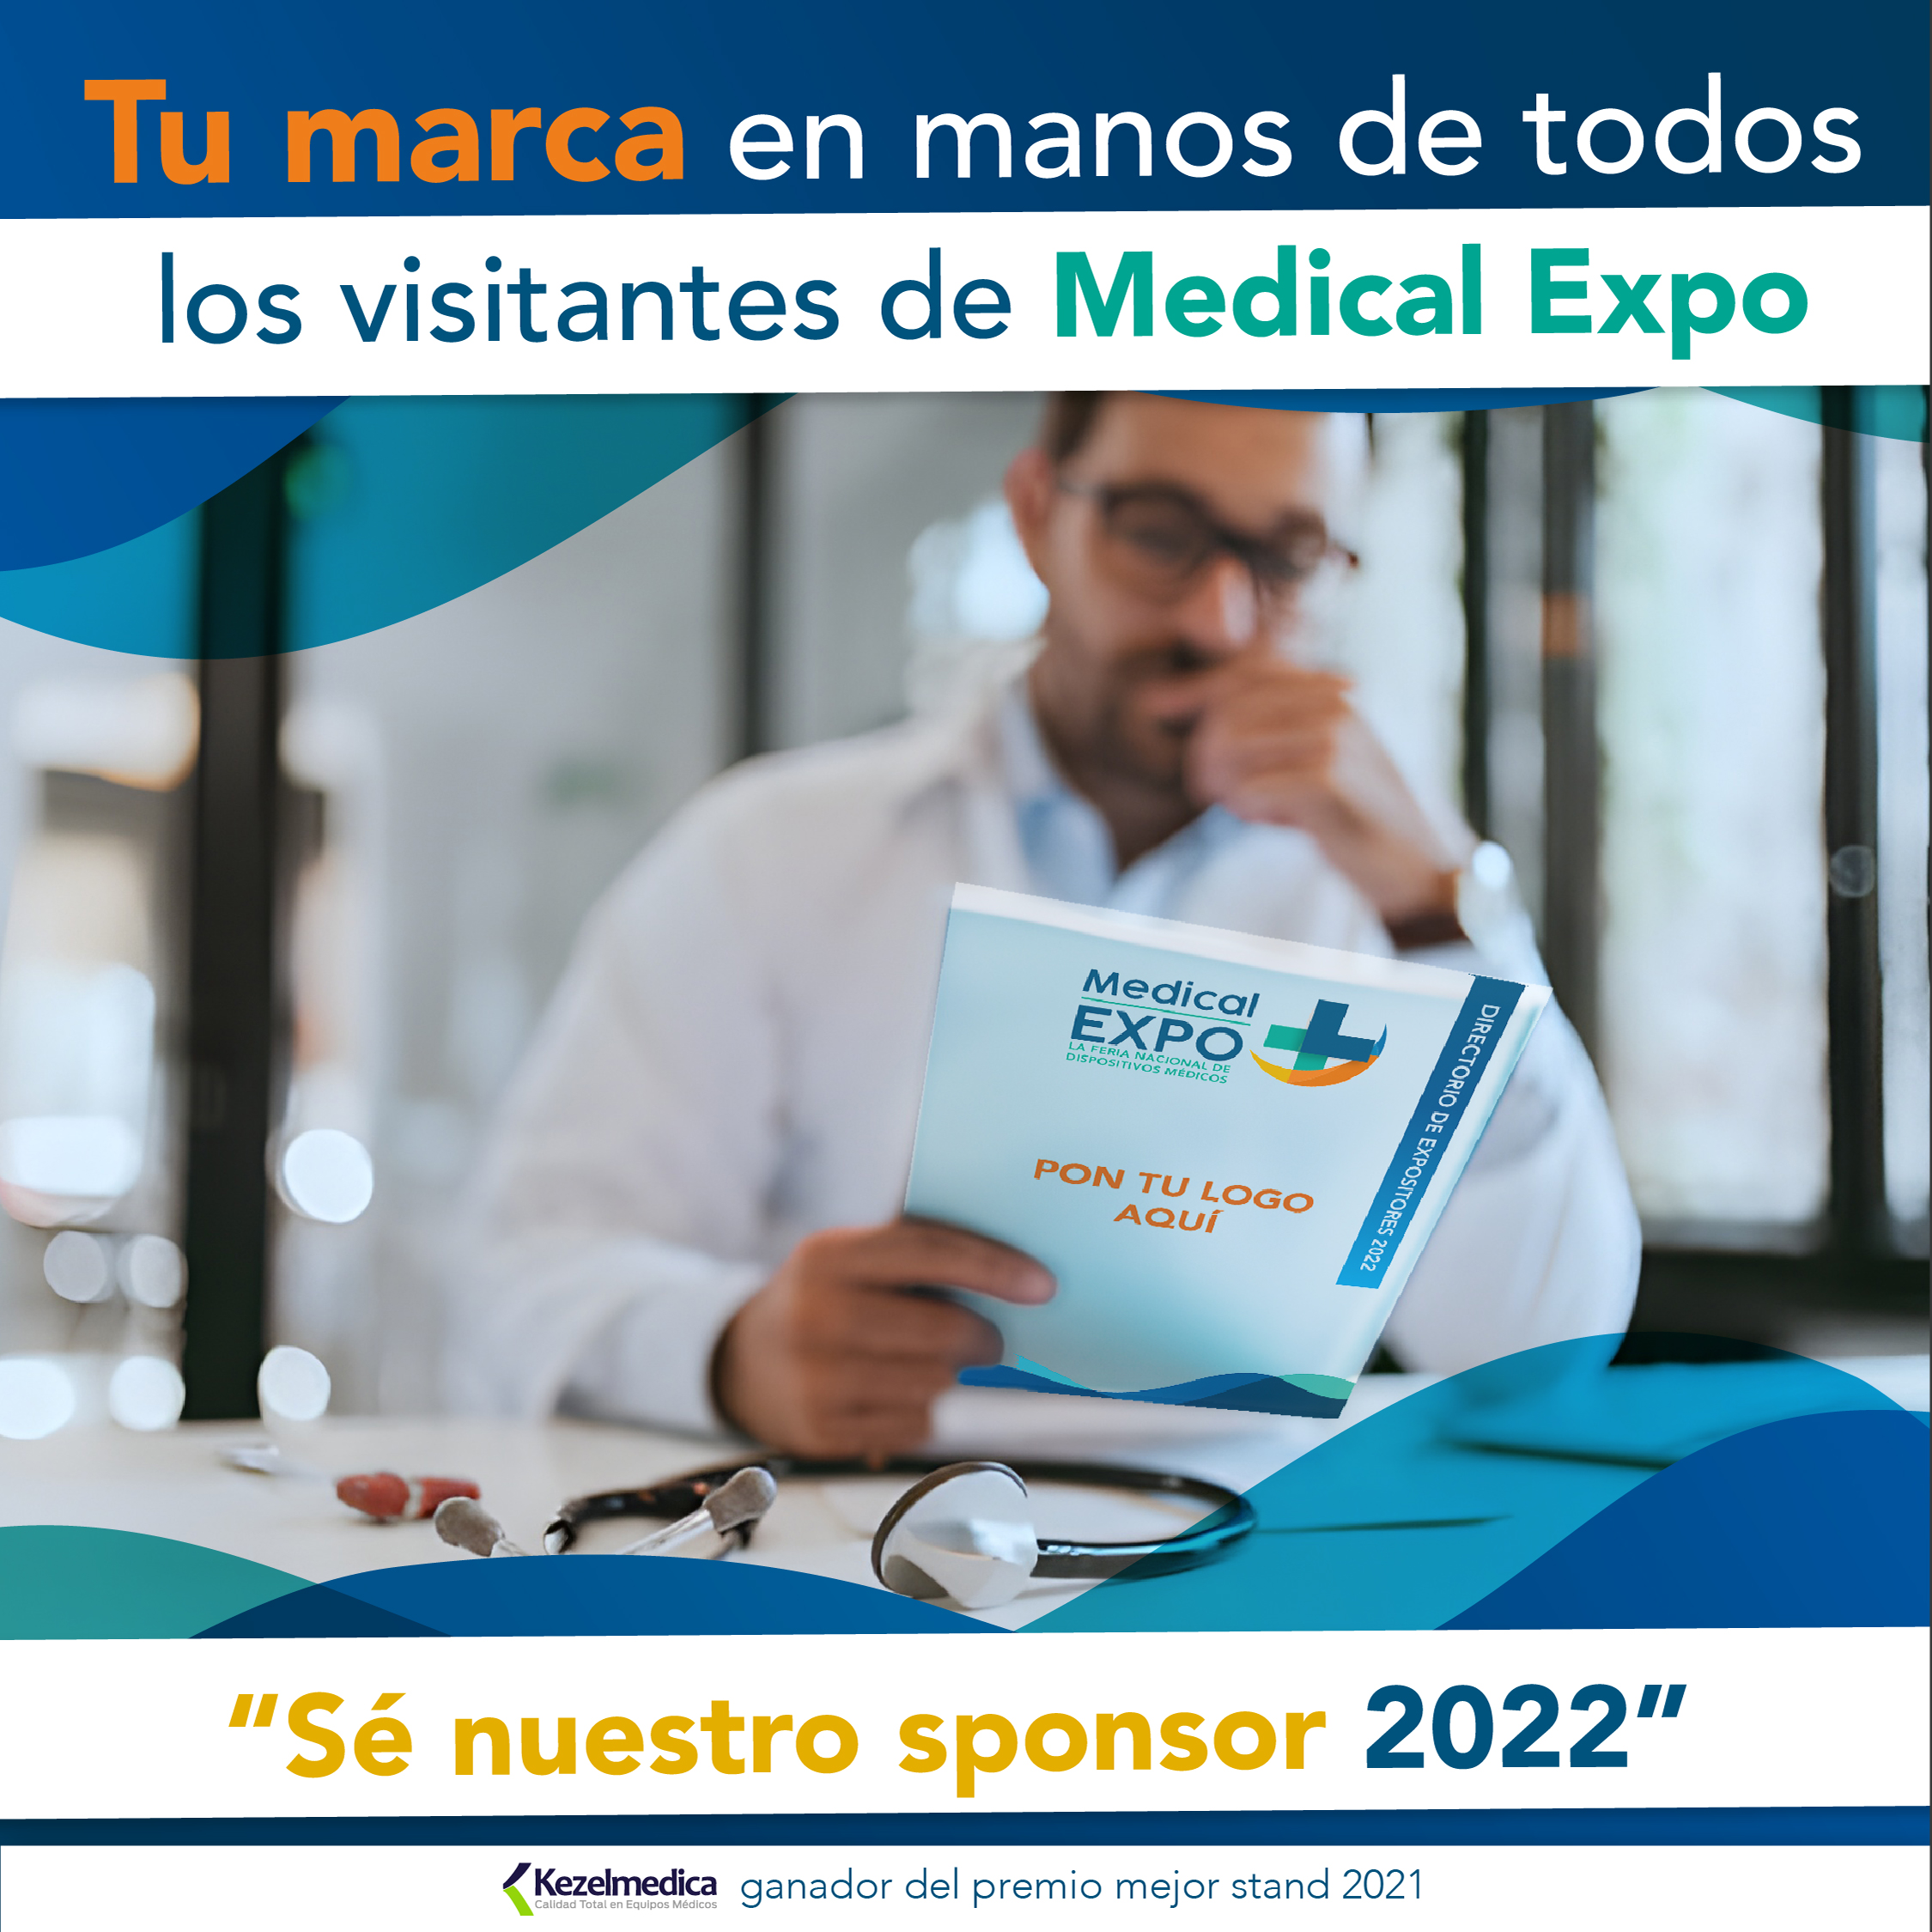 Medical Expo showcase image 4